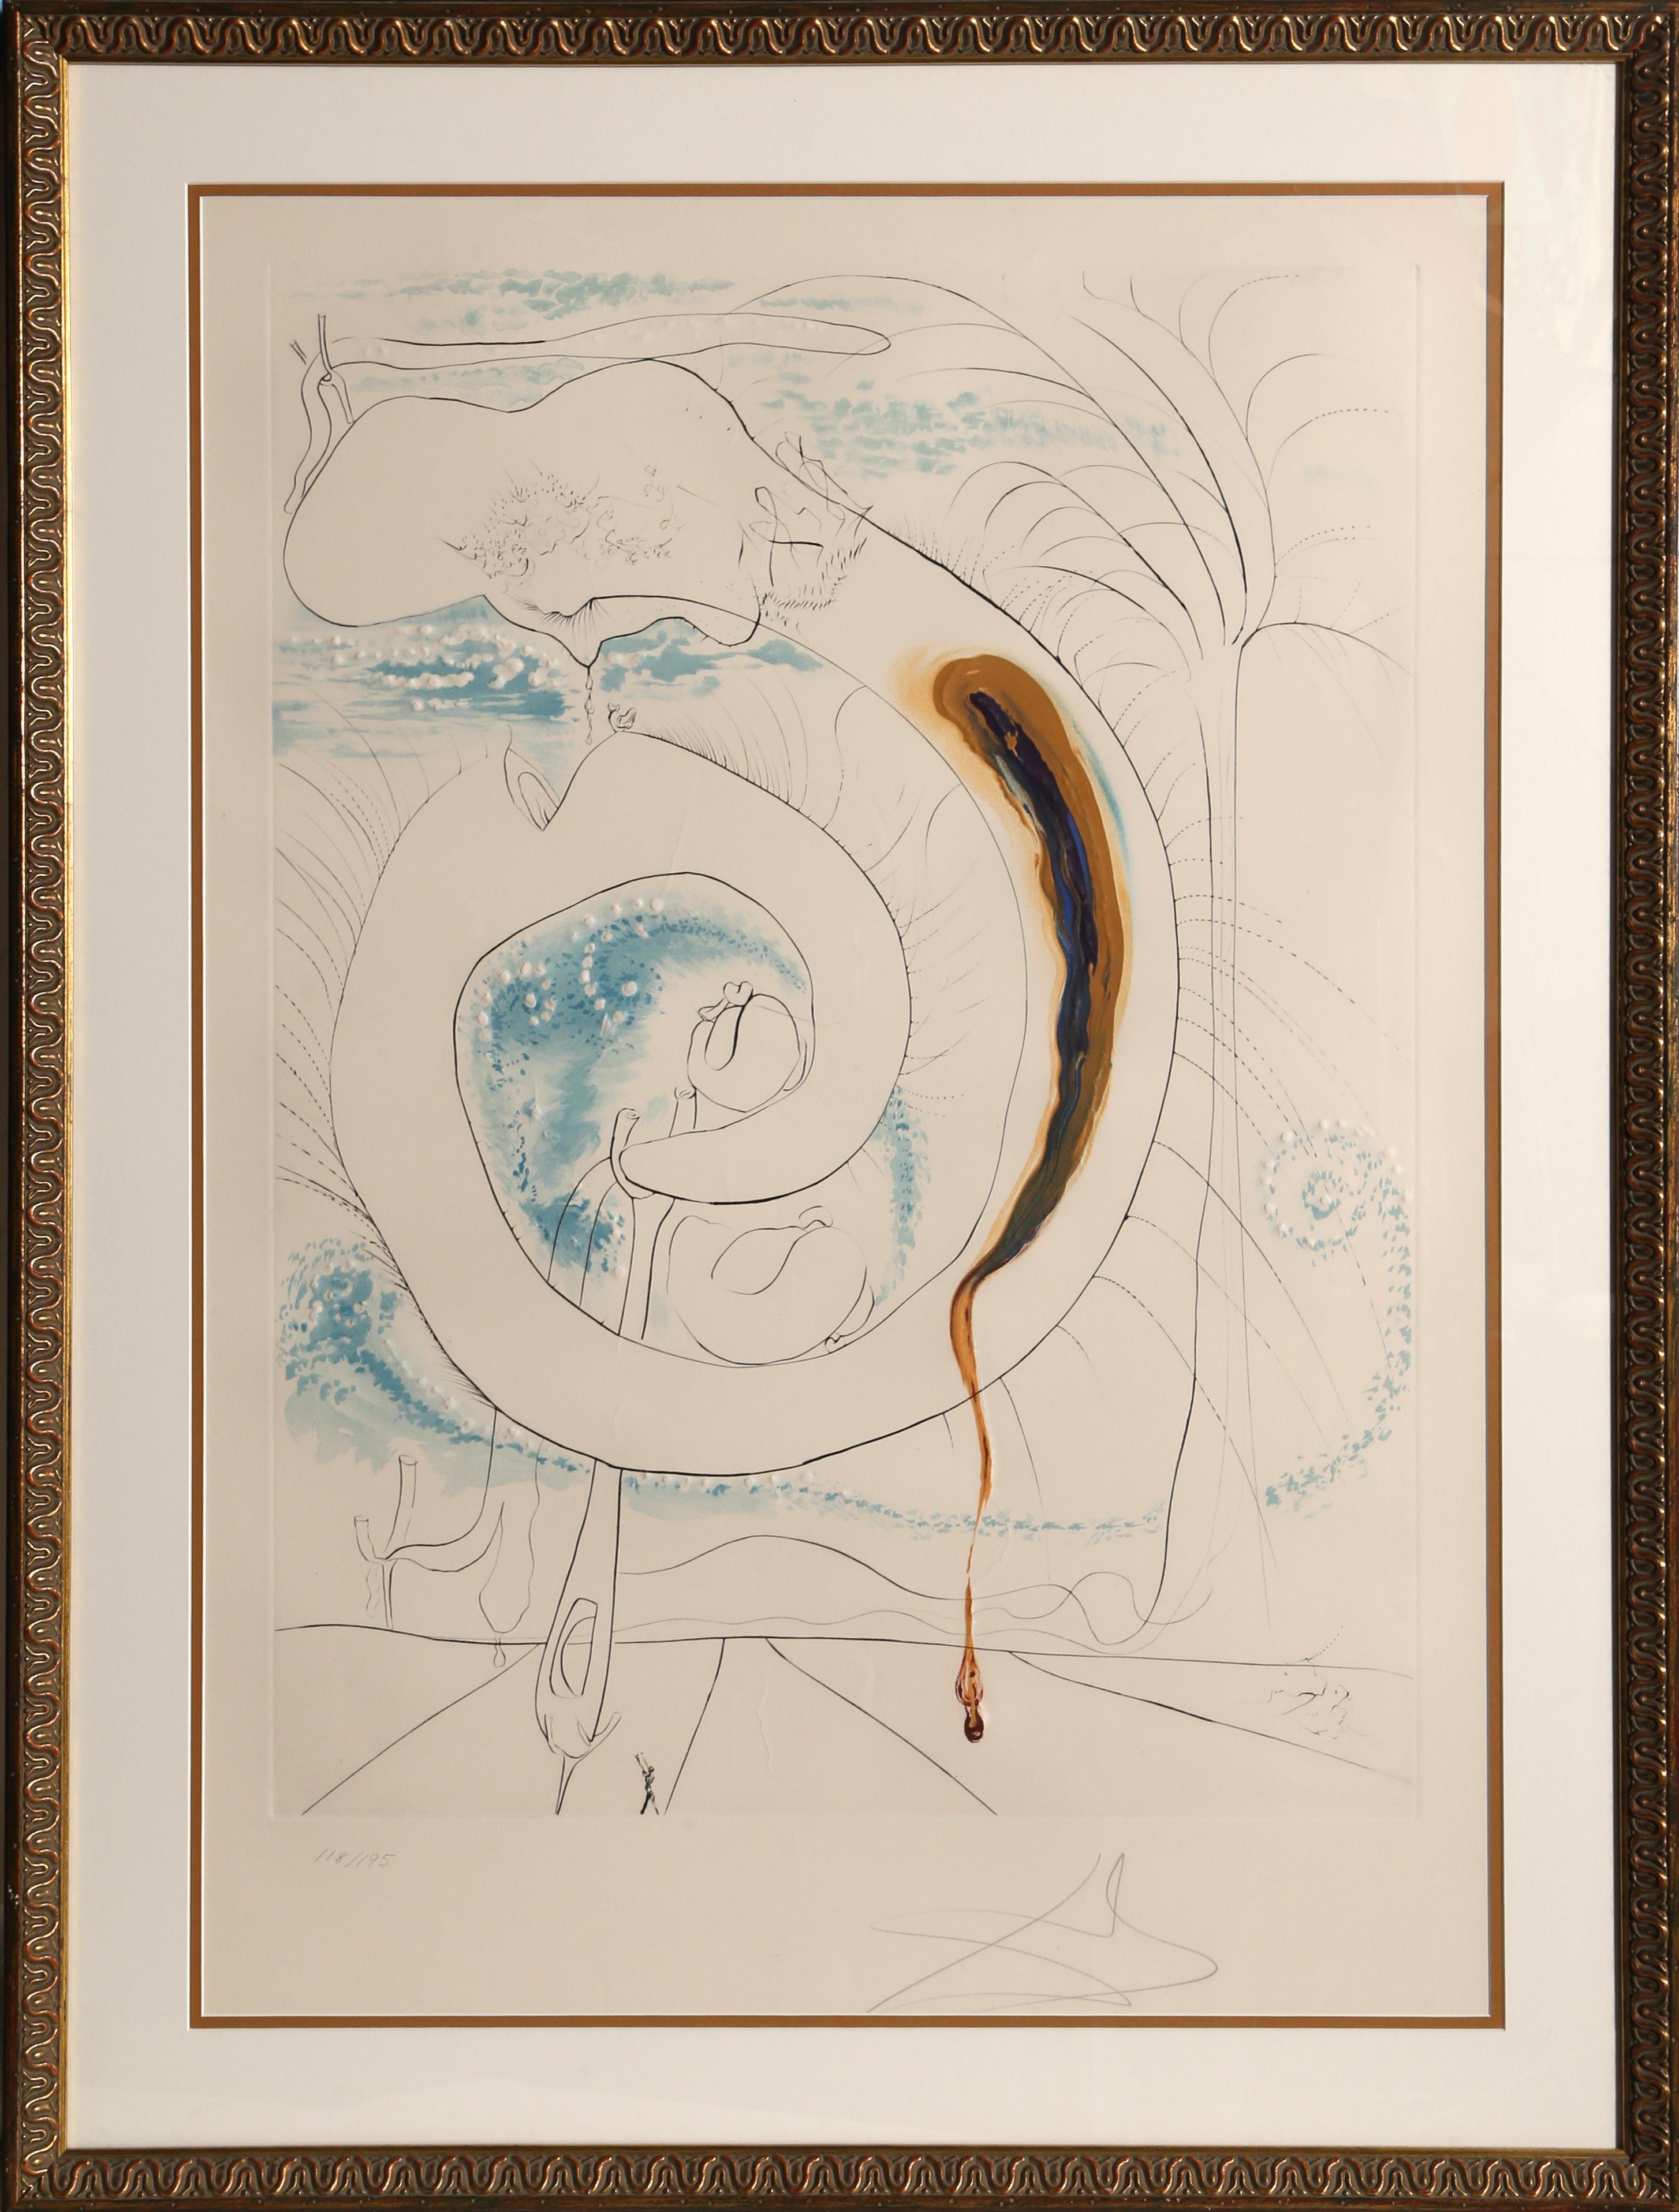 Le cercle visceral du Cosmos from La Conquete du Cosmos Etching by Salvador Dali